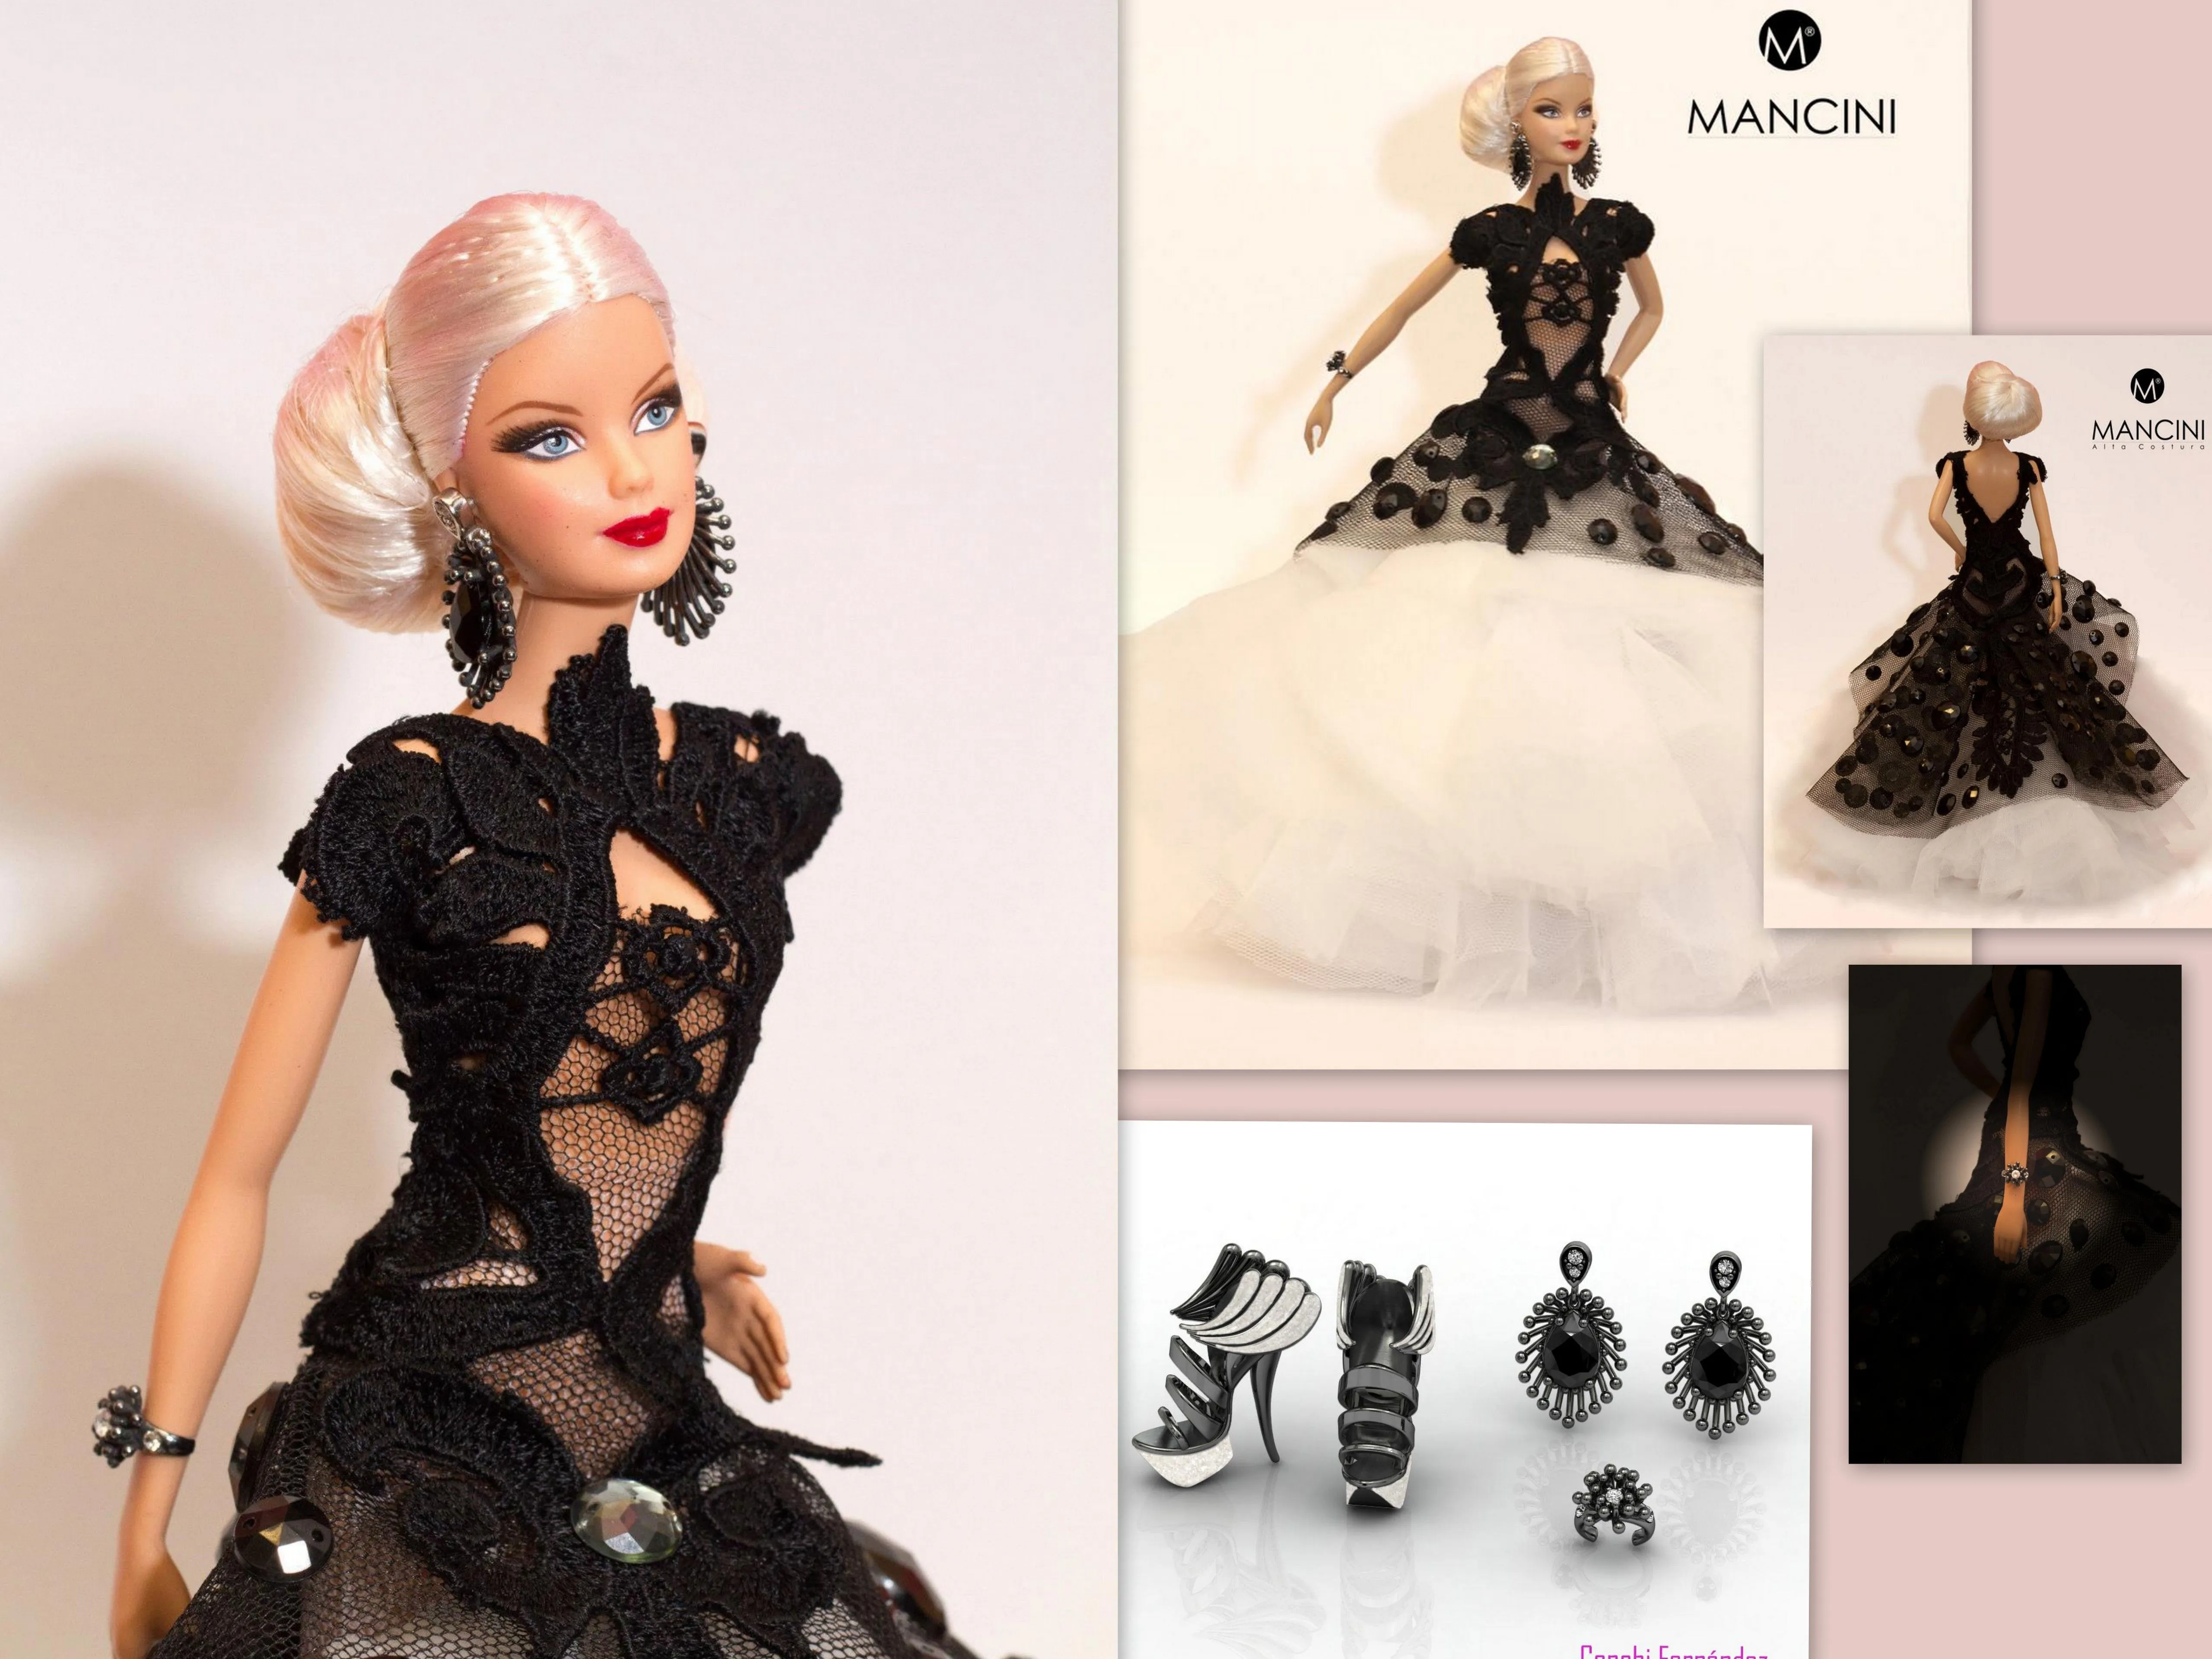 joyería | Una vitrina llena de tesoros (Barbie blog)